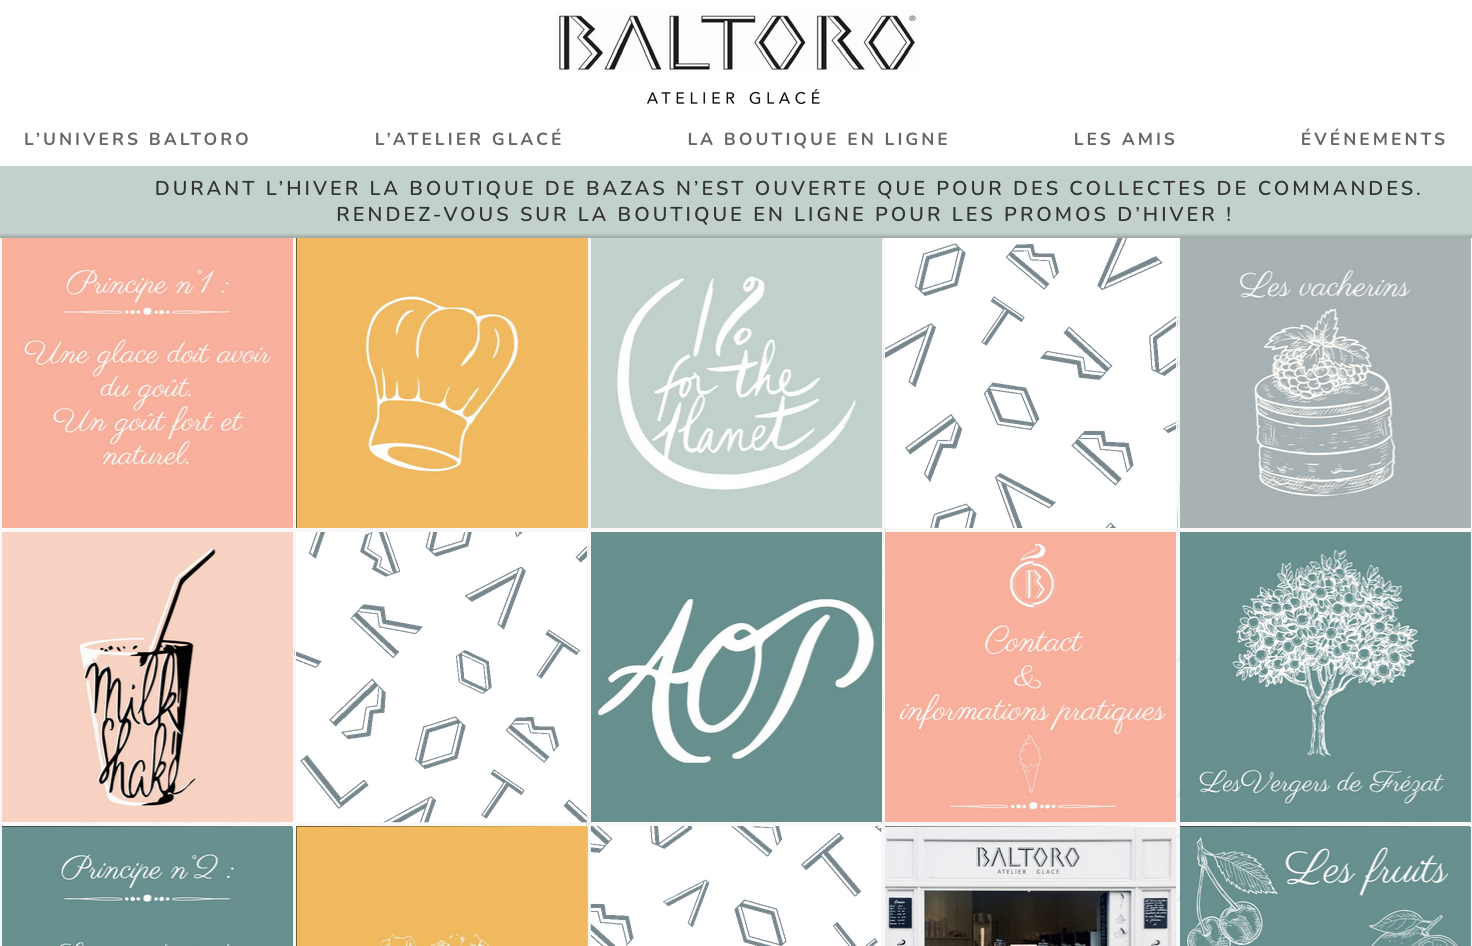 Baltoro | Un site réalisé par Lovelace & Balzac